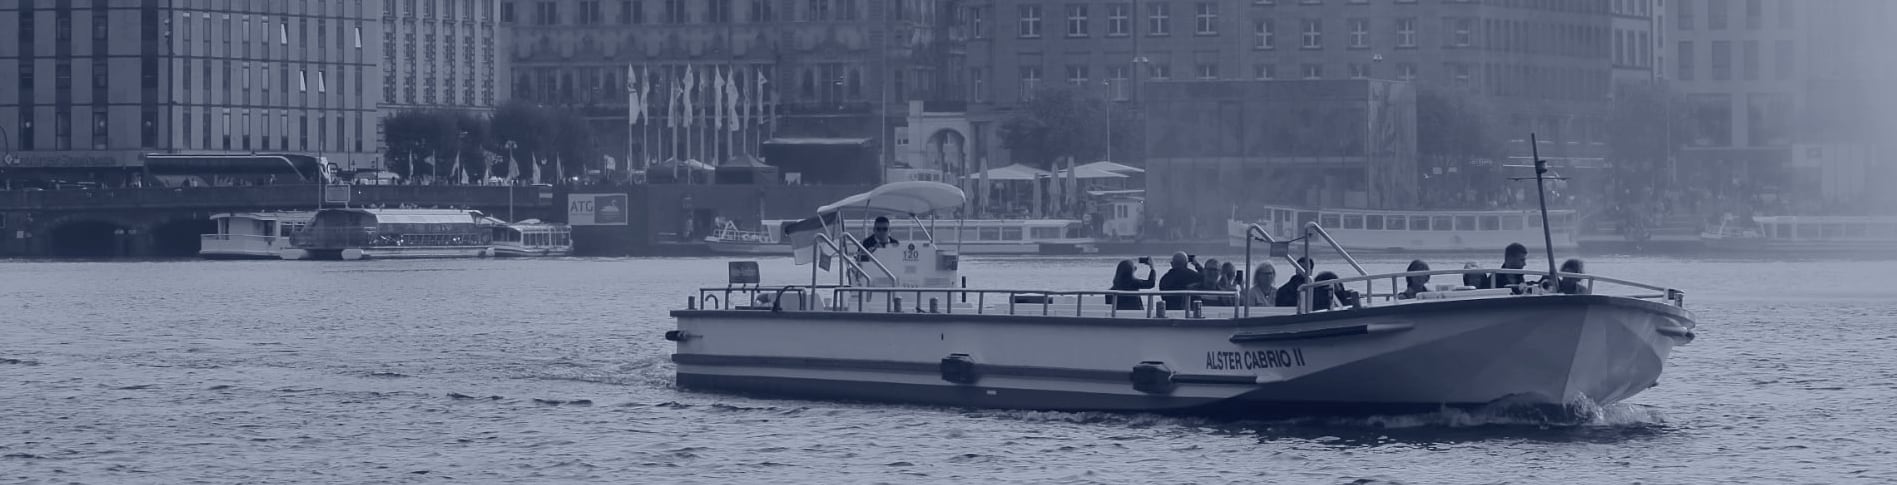 Alsterschiff Cabrio vor Jungfernstieg Kulisse und Martens & Partner Executive Search Office.